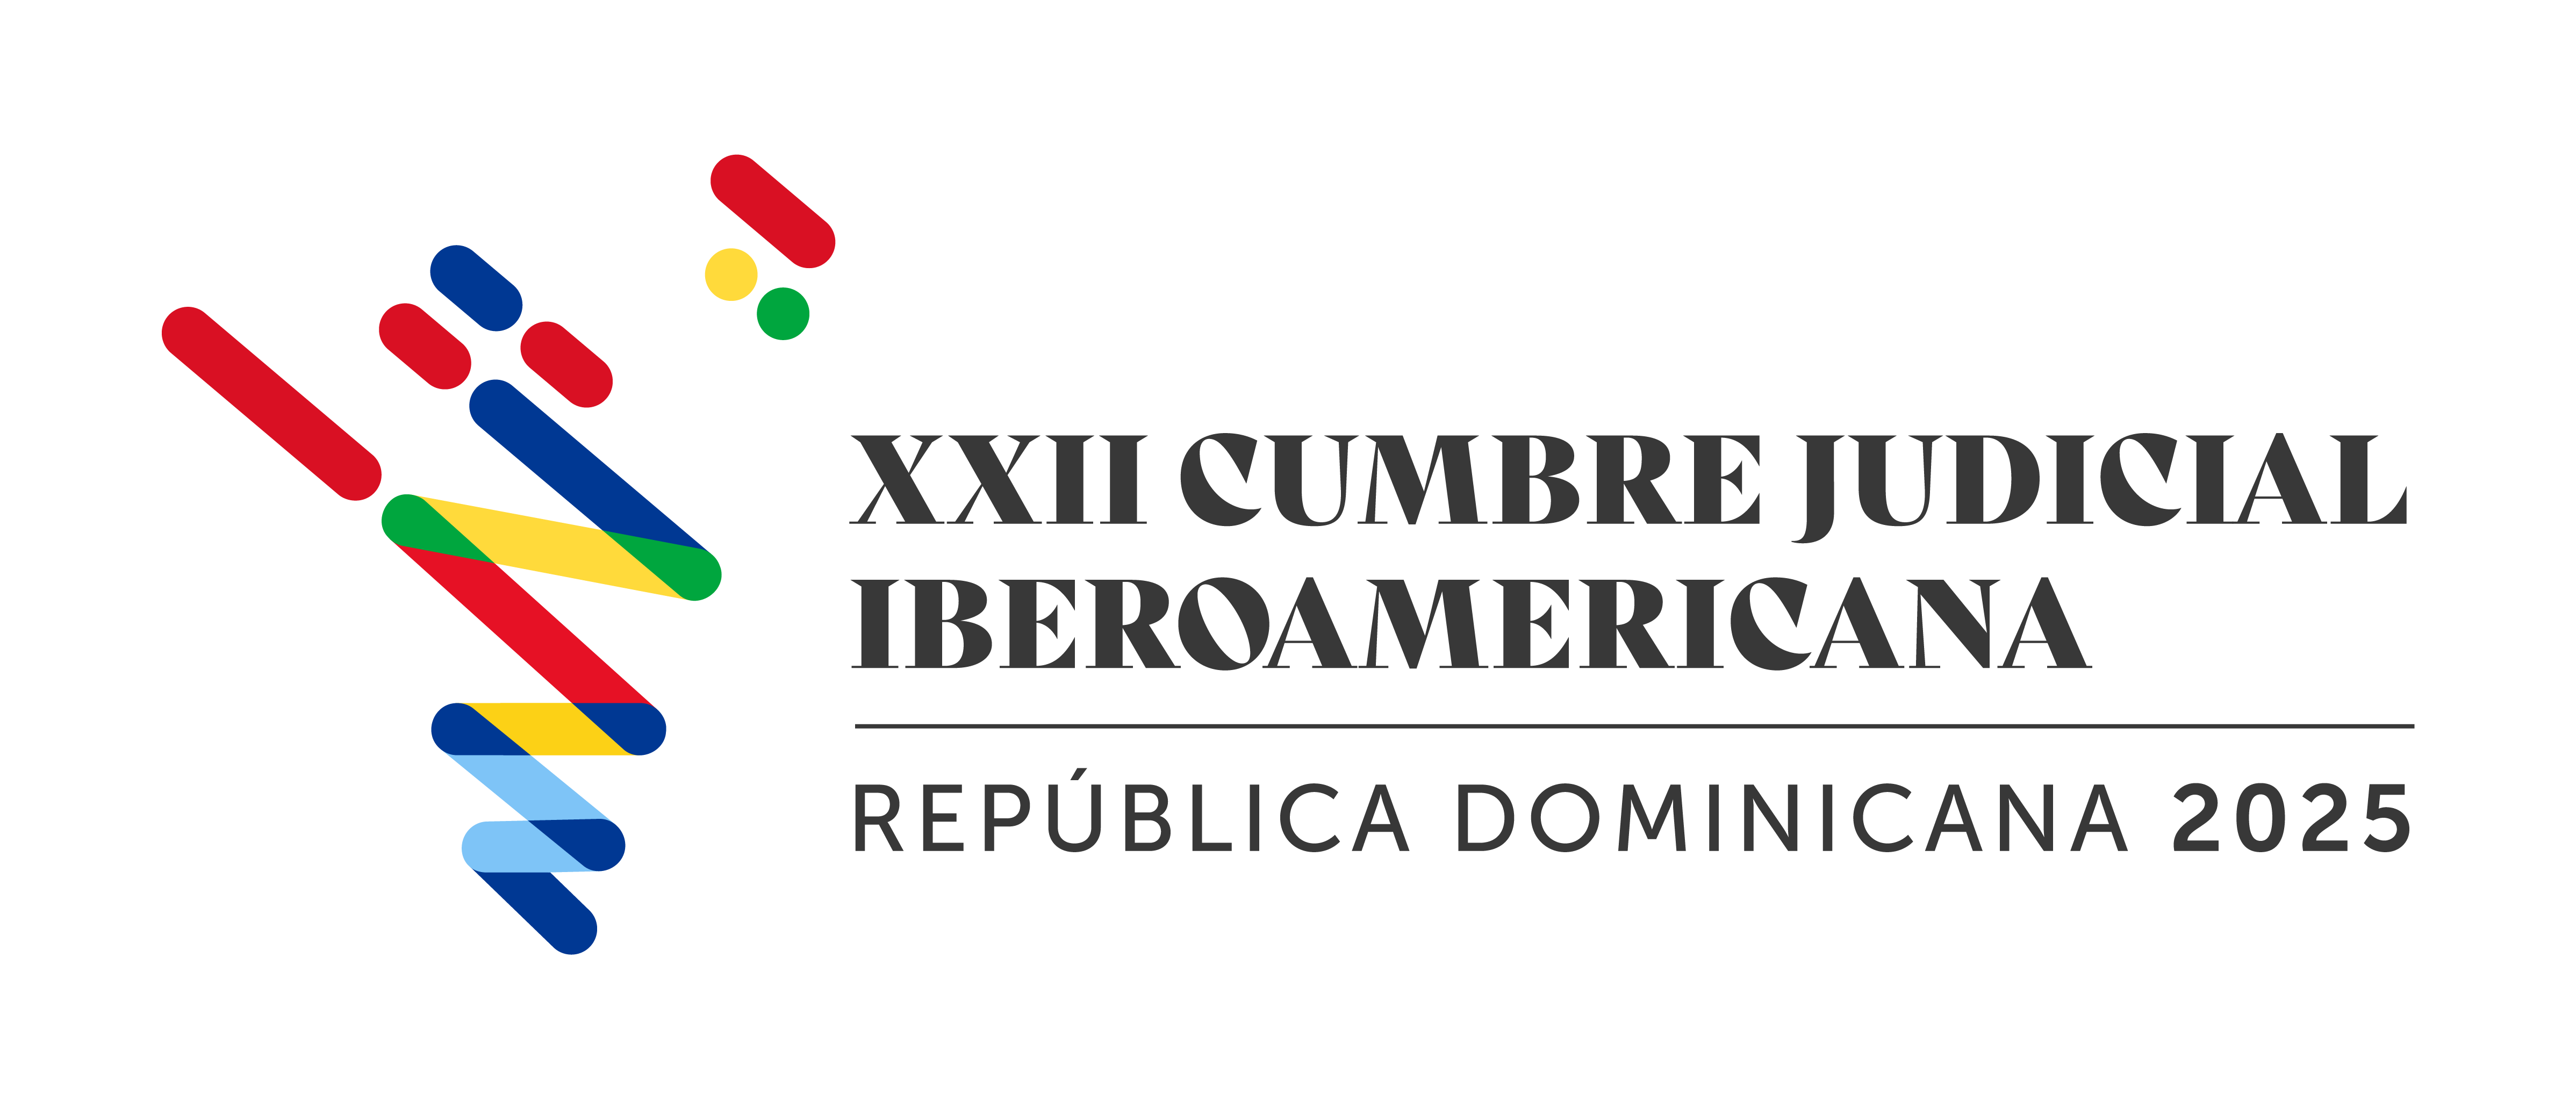 XXII Cumbre Judicial Iberoamericana